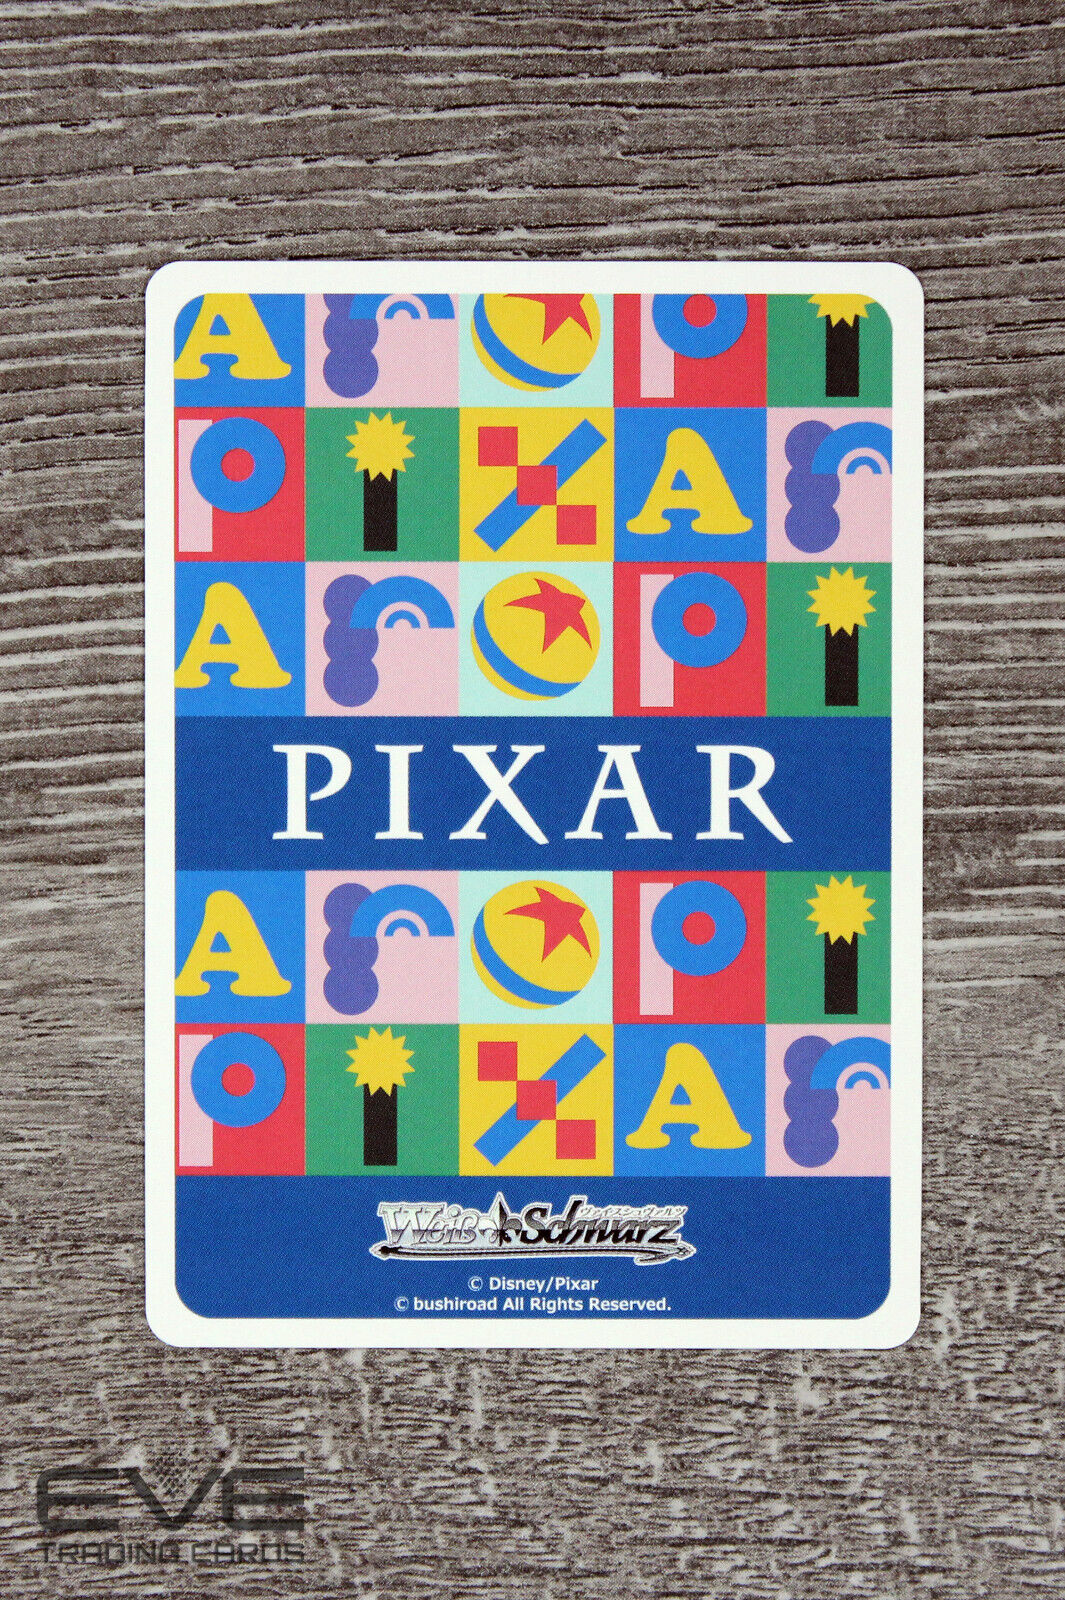 Weiss Schwarz Japanese Pixar Card PXR/S94-033 R "Scary Mike Wazowski" NM/M